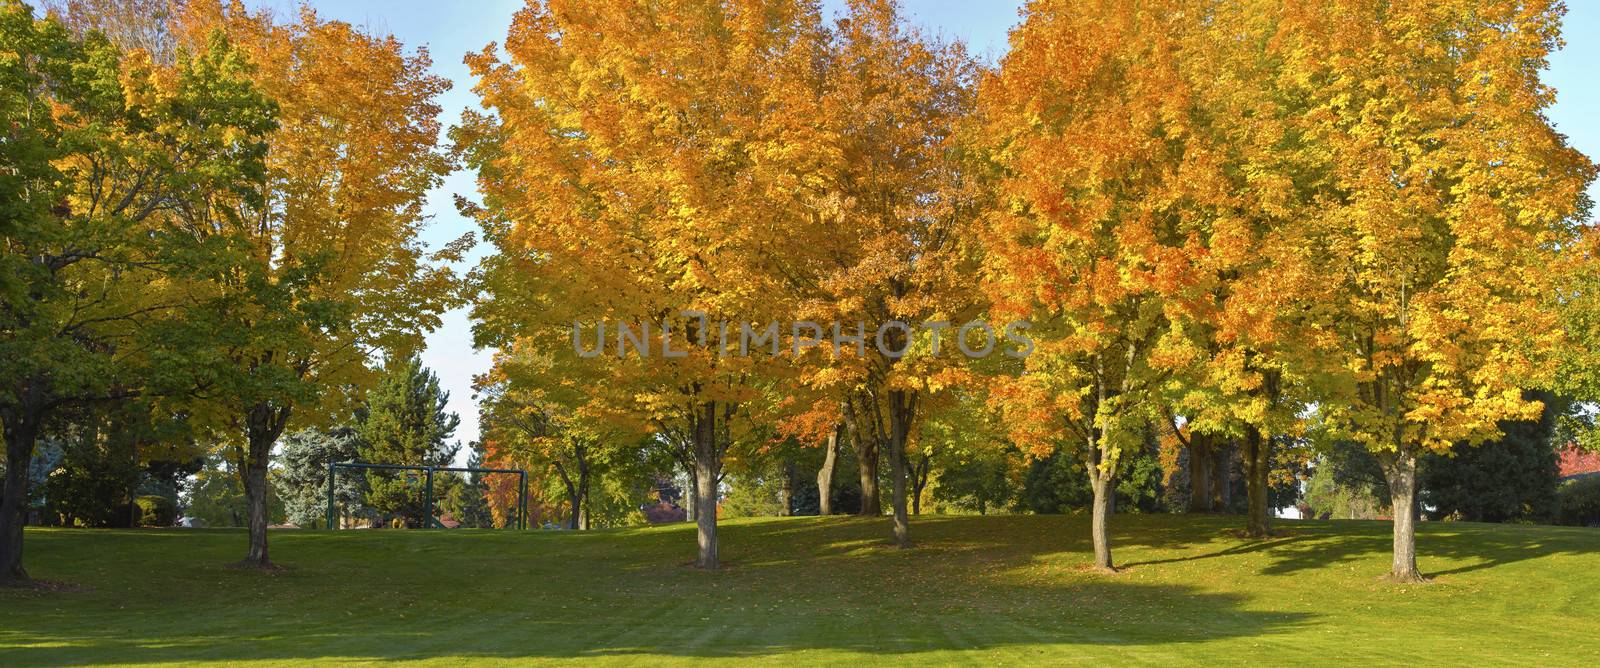 Public park panorama in Autumn colors Gresham OR.